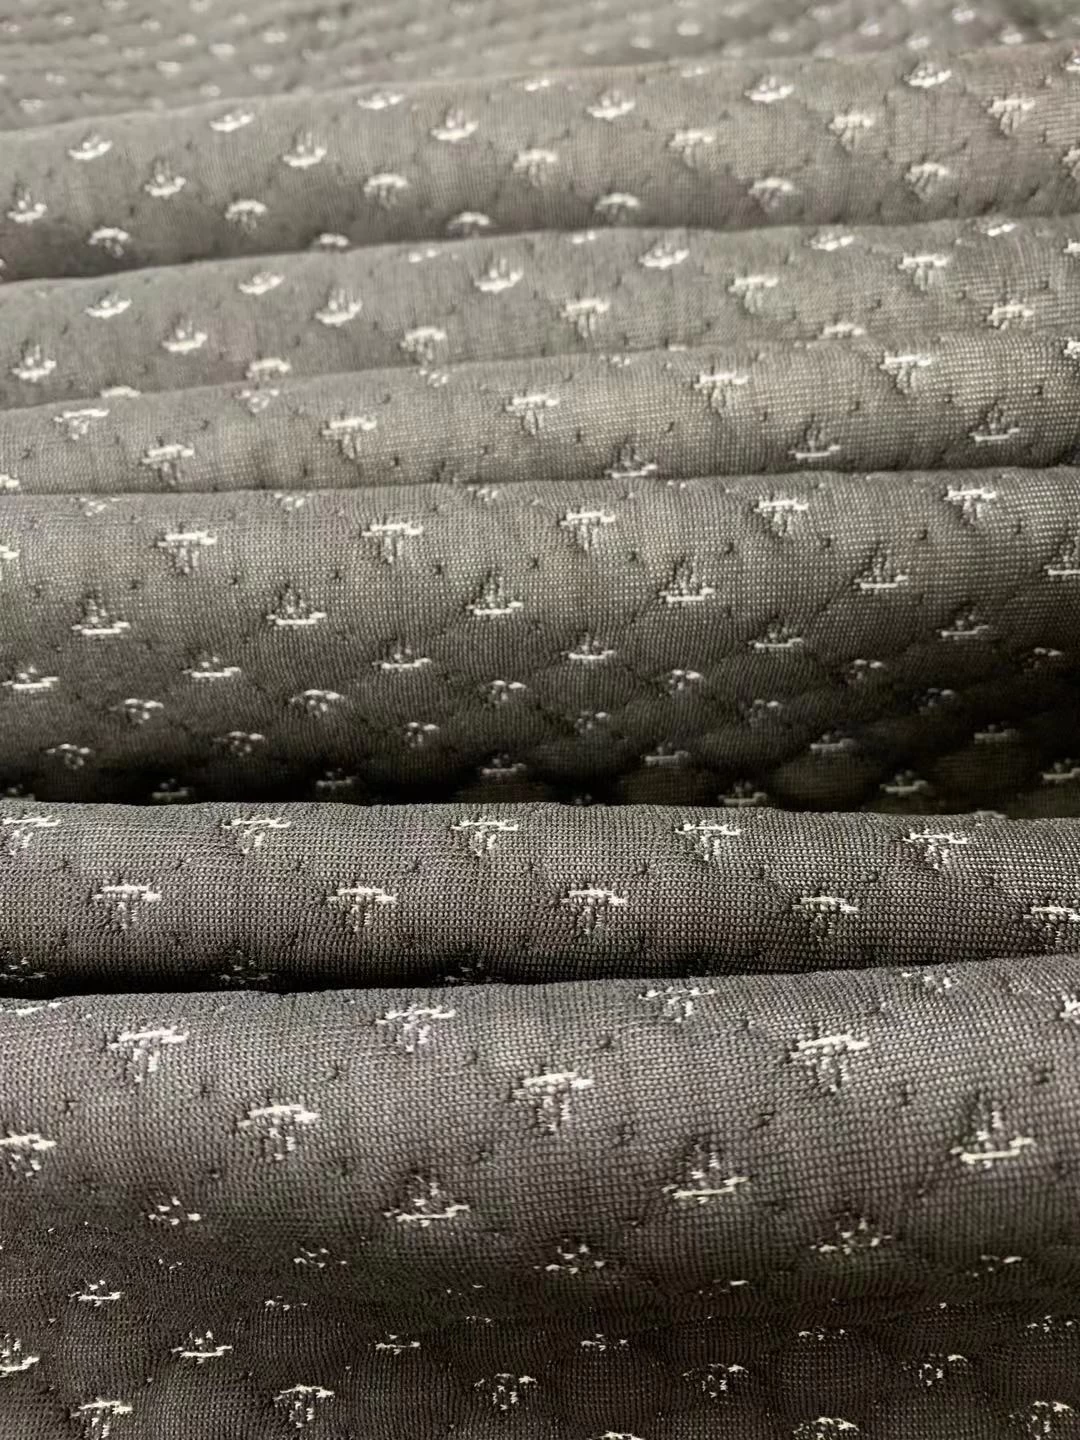 dark mattress strech knit border fabric